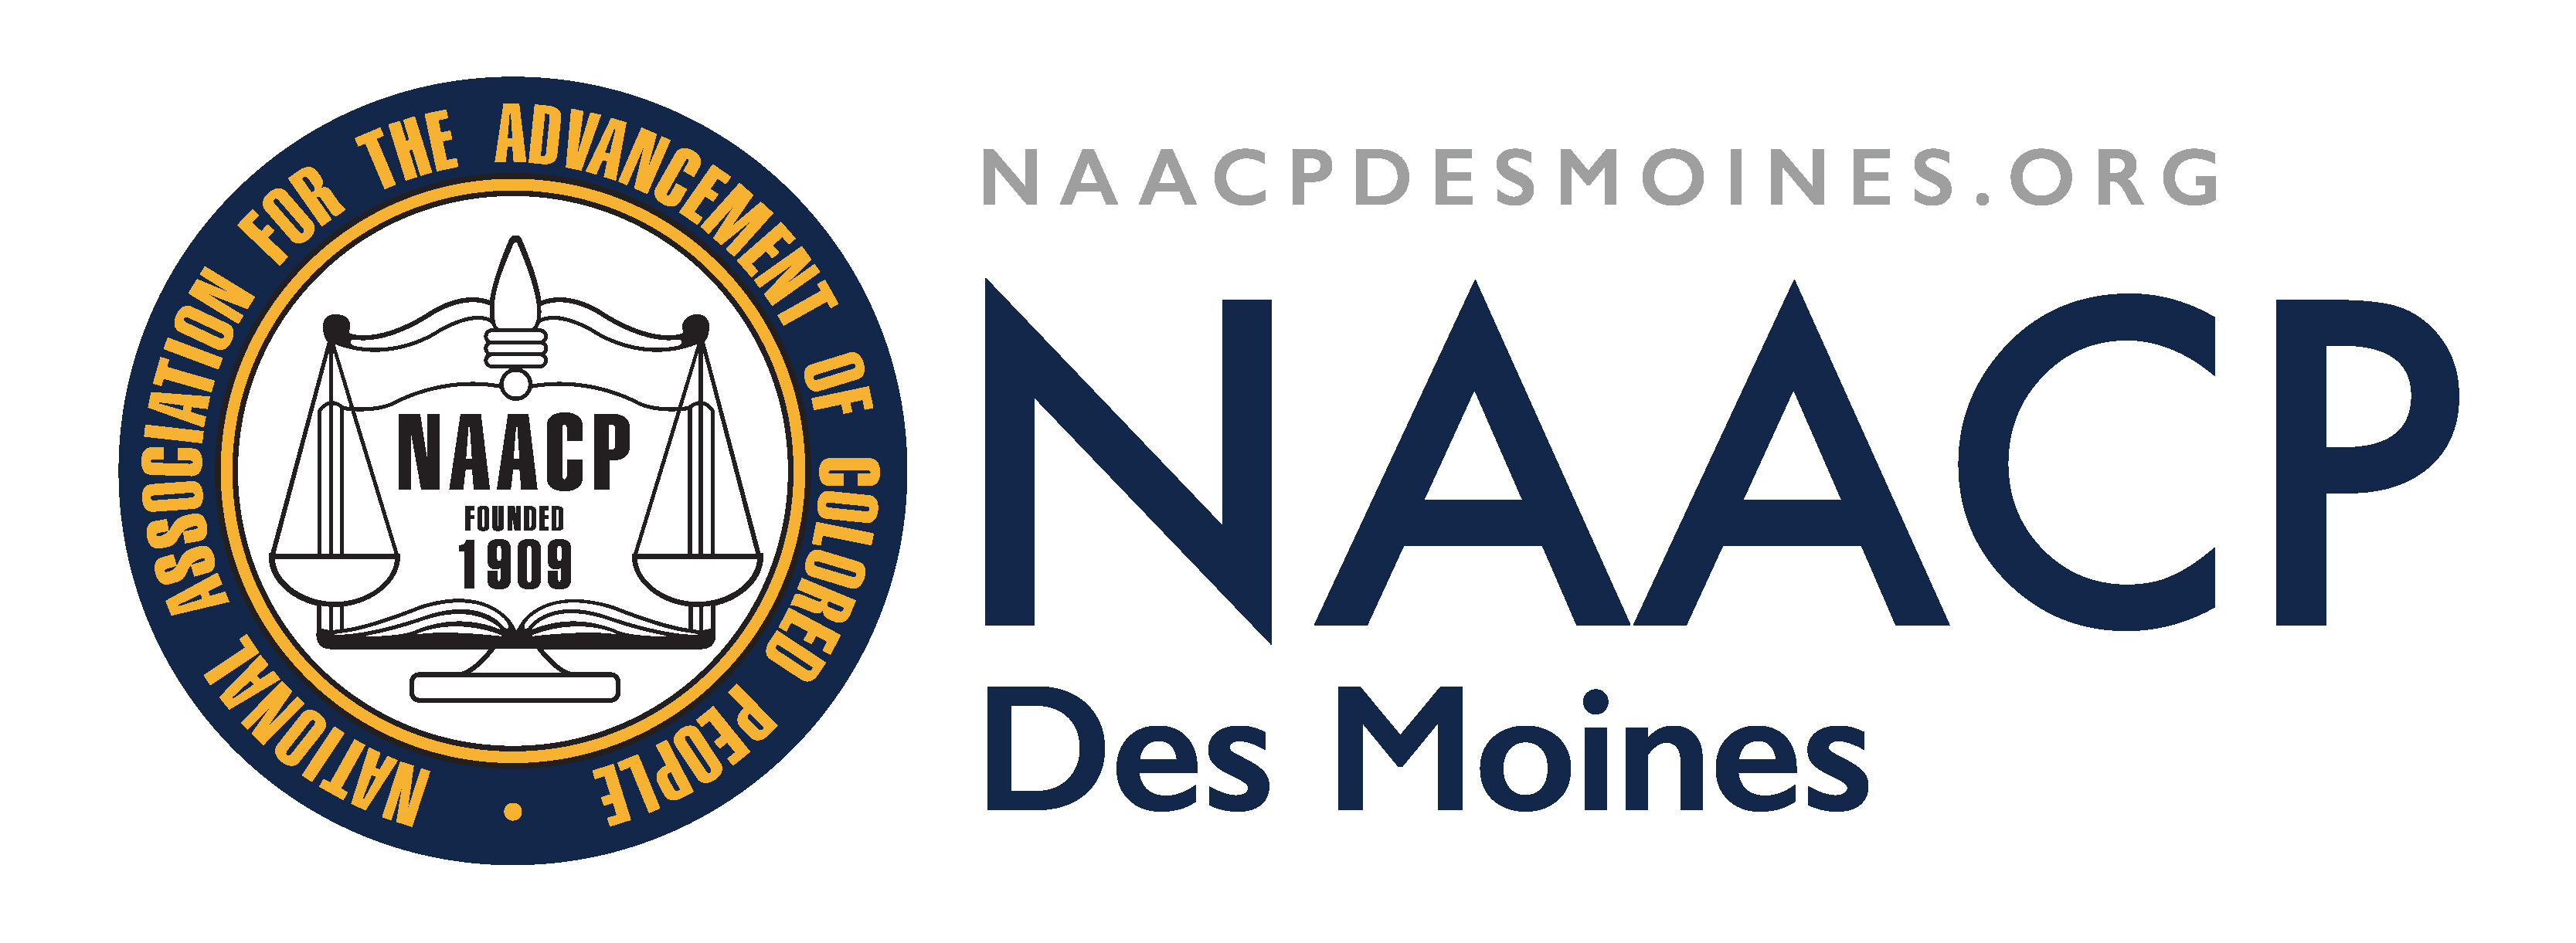 NAACP Des Moines logo